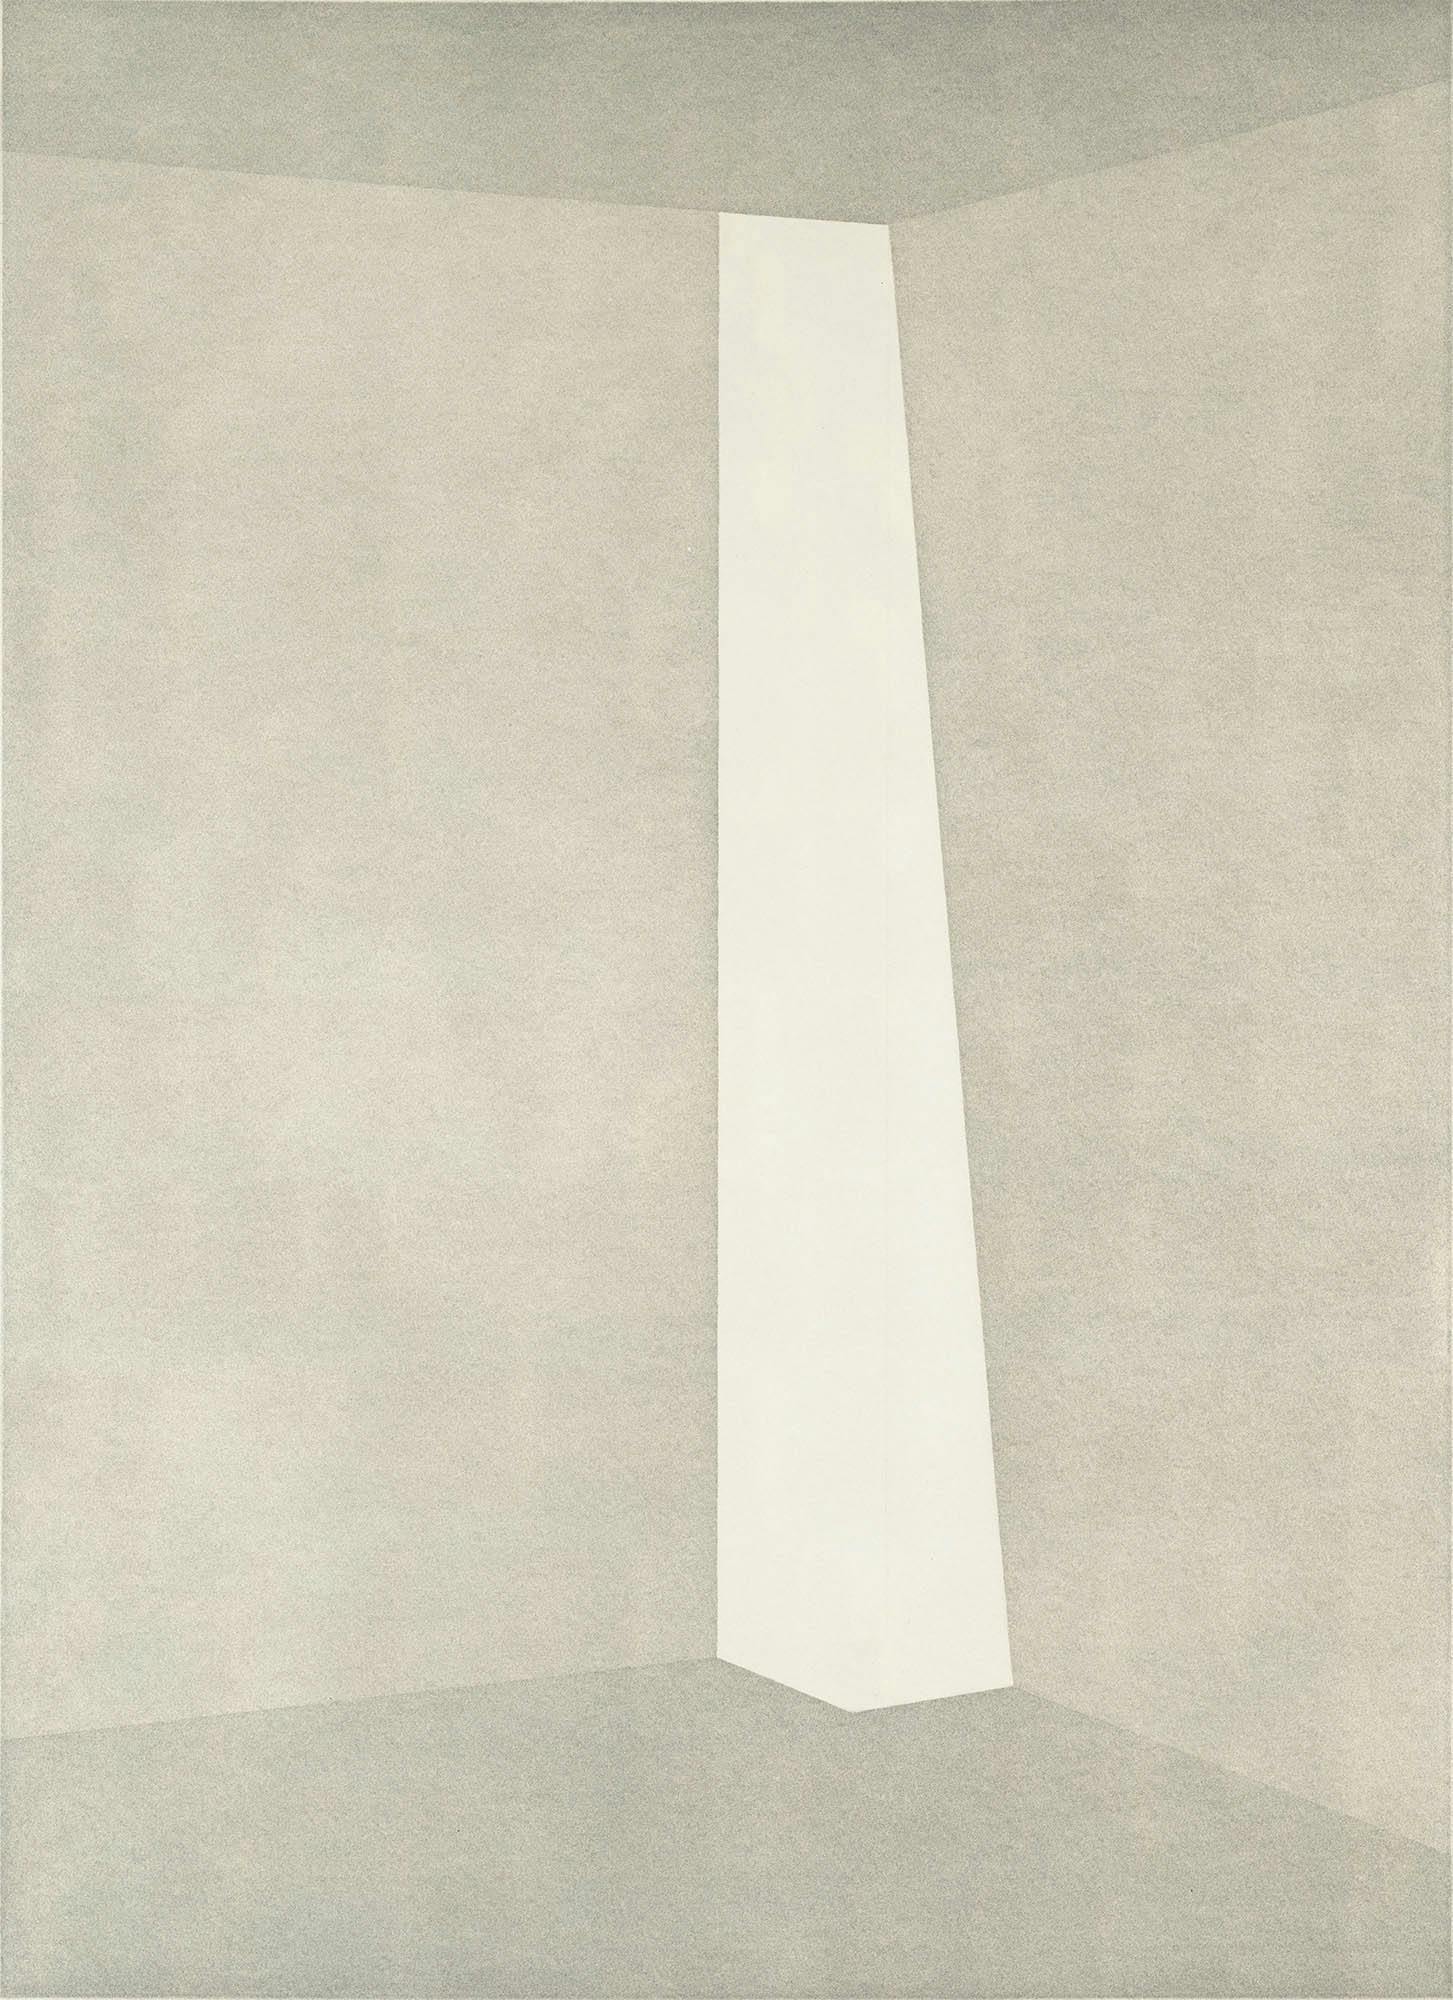 James Turrell, Enzu (from “Still Light” Series), 1990/91